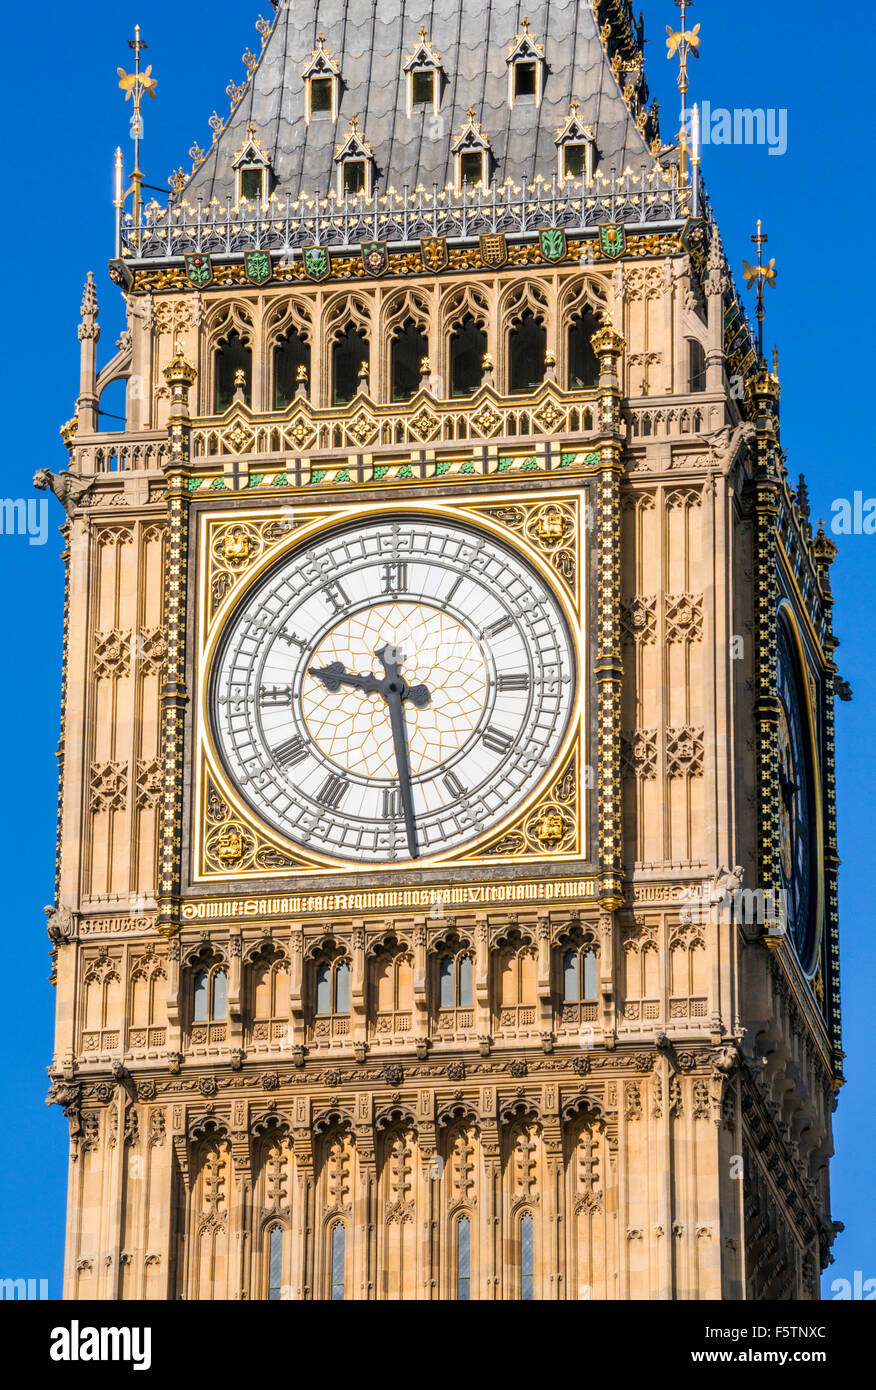 Big Ben orologio Clock Tower al di sopra del Palazzo di Westminster e le case del Parlamento City di Londra Inghilterra REGNO UNITO GB EU Europe Foto Stock